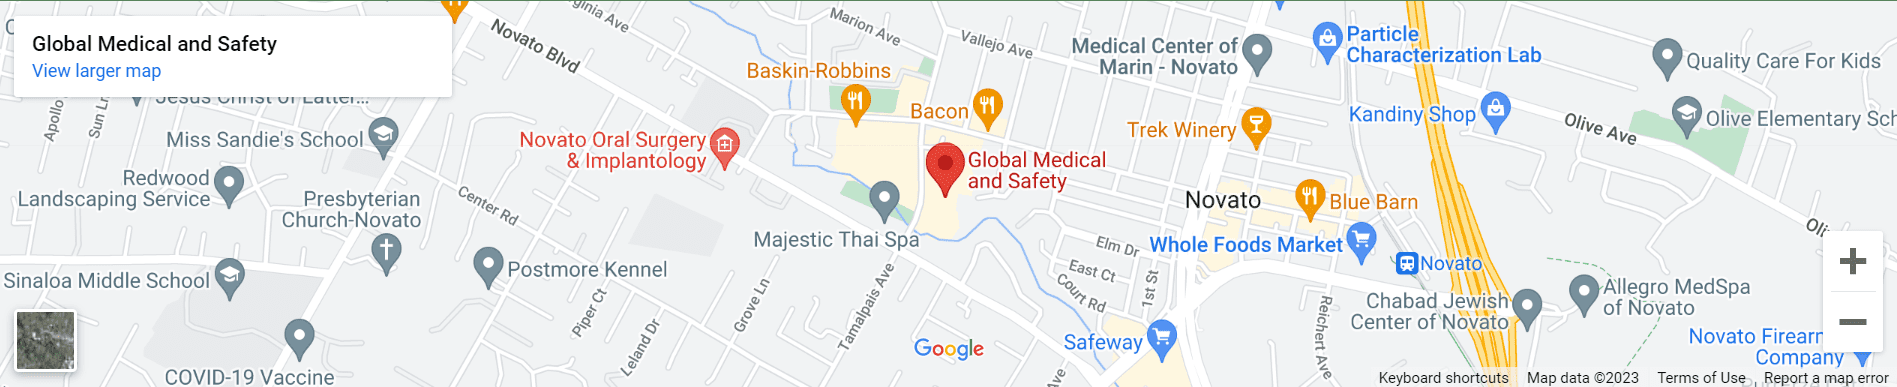 Global Medical + Safety